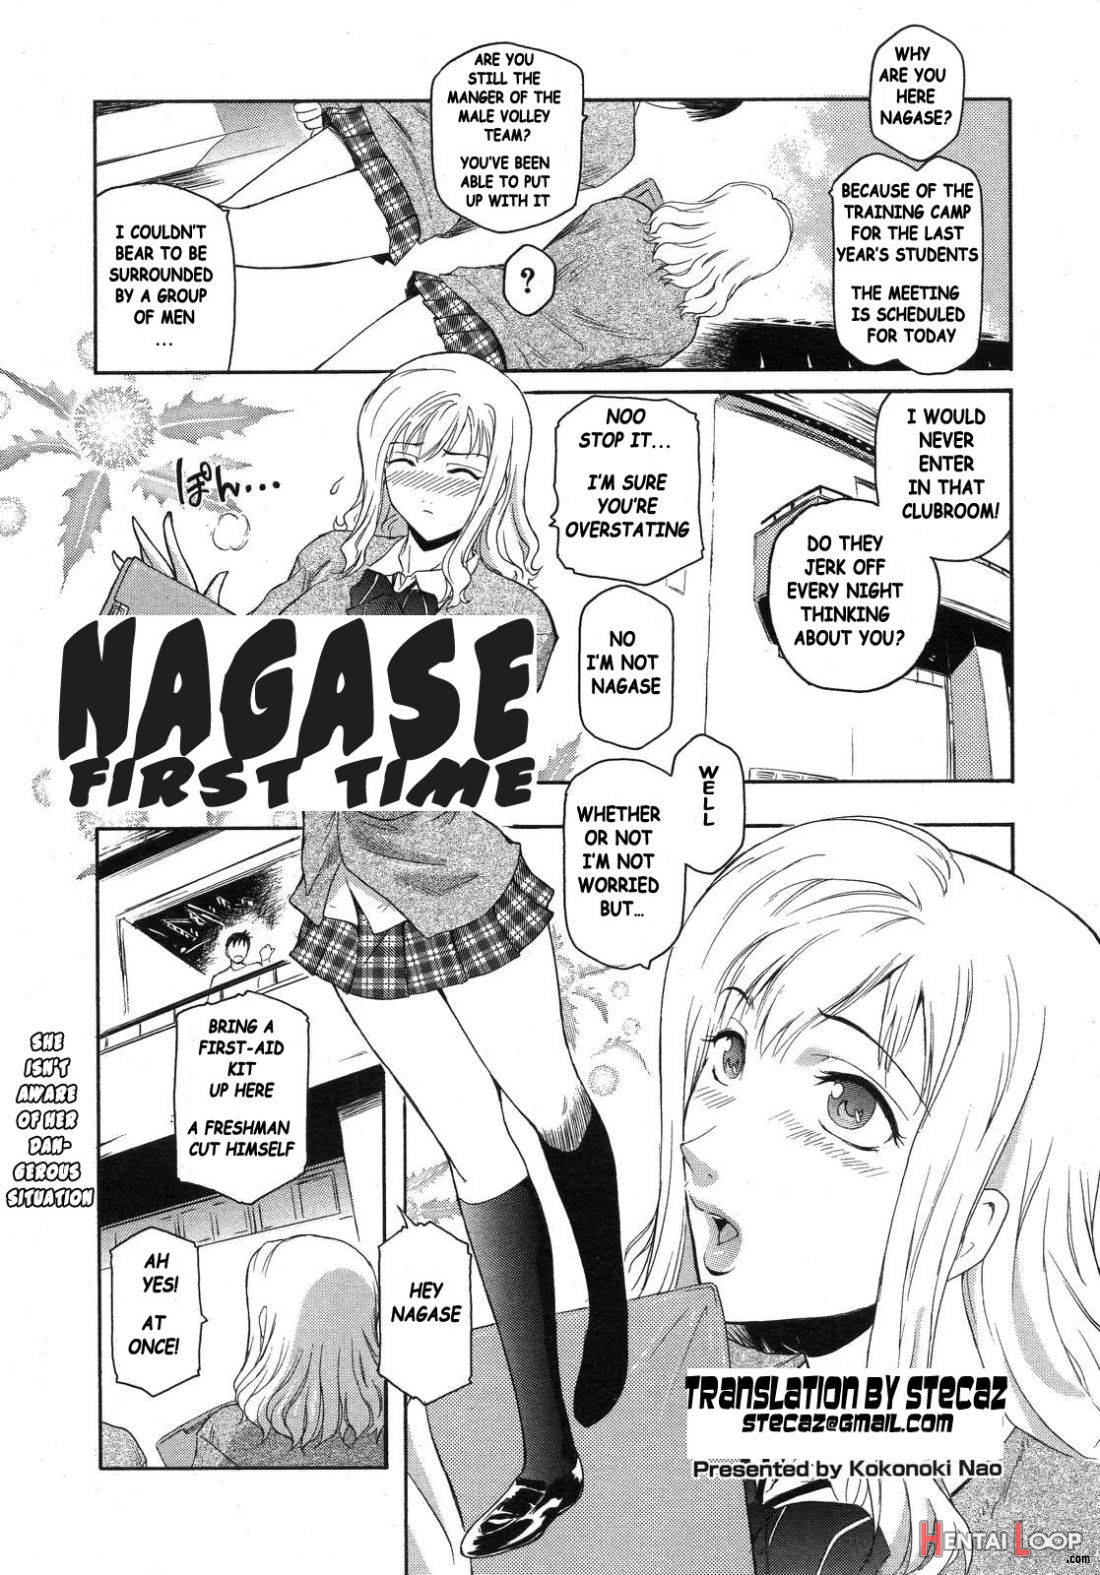 Nagase Hitotabi page 1